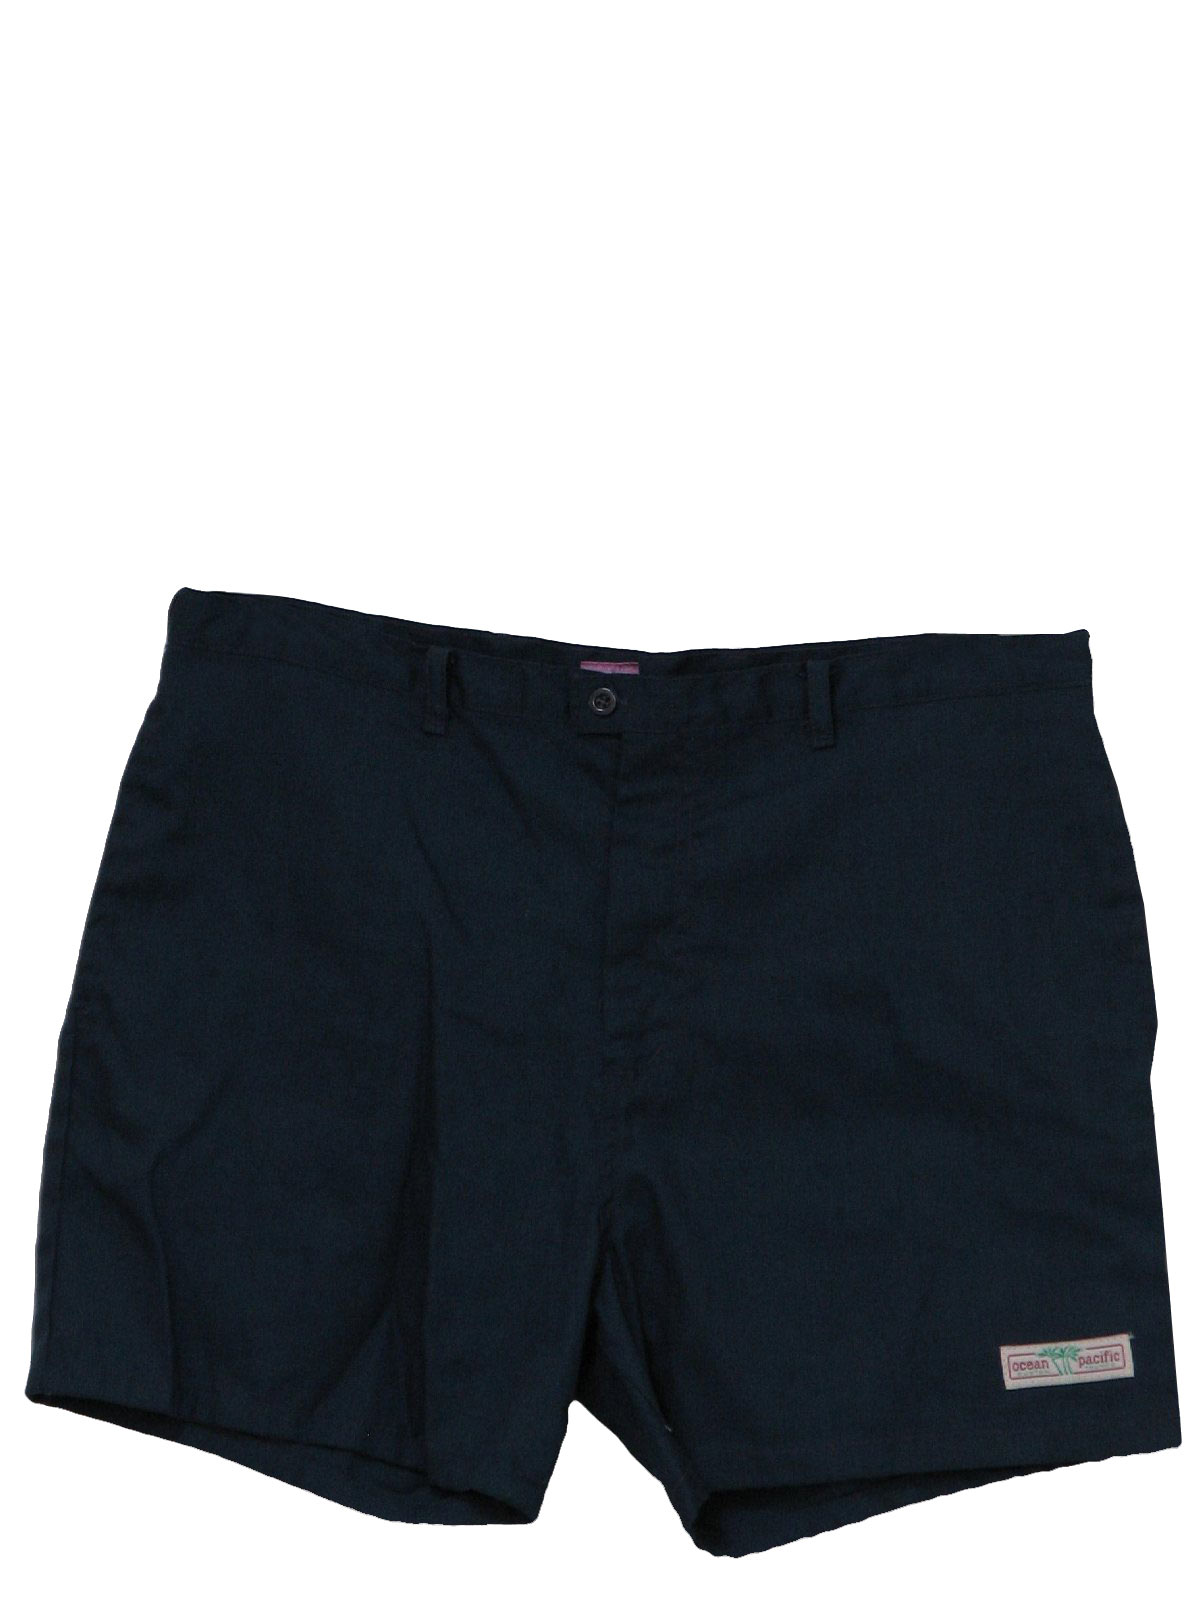 Vintage Ocean Pacific Sunwear 80's Shorts: 80s -Ocean Pacific Sunwear ...